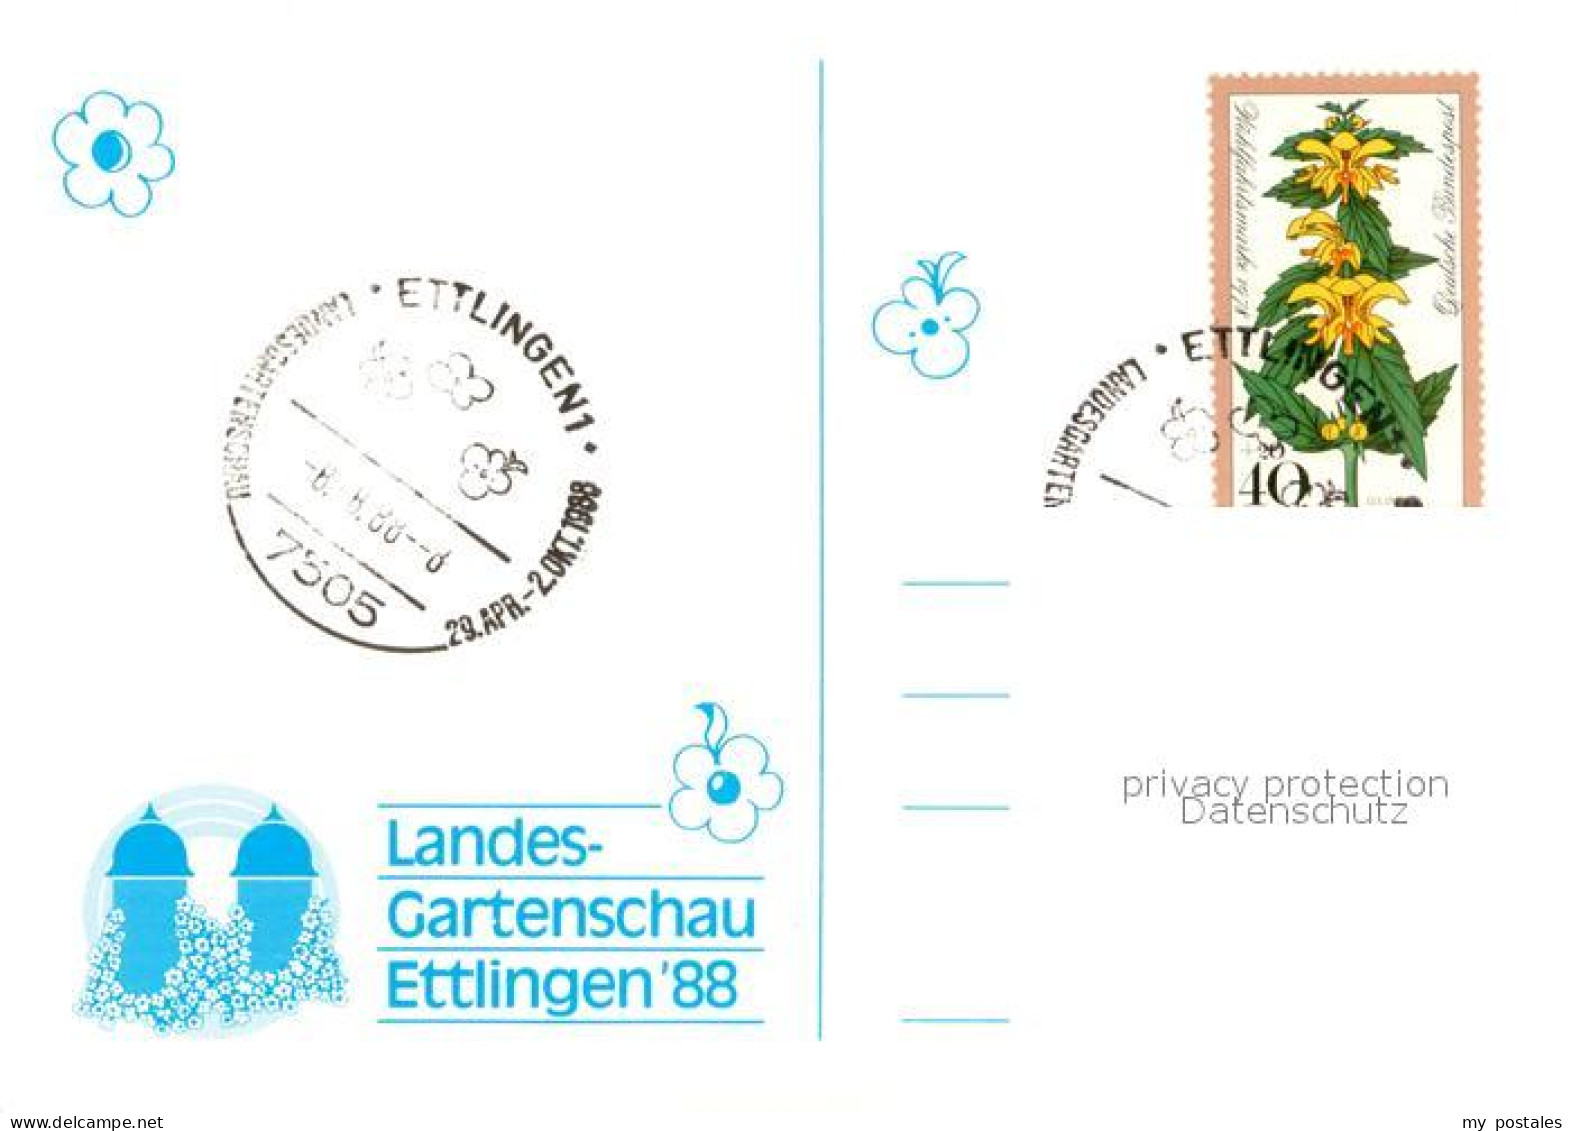 73715953 Ettlingen Landesgartenschau 88 Ettlingen - Ettlingen